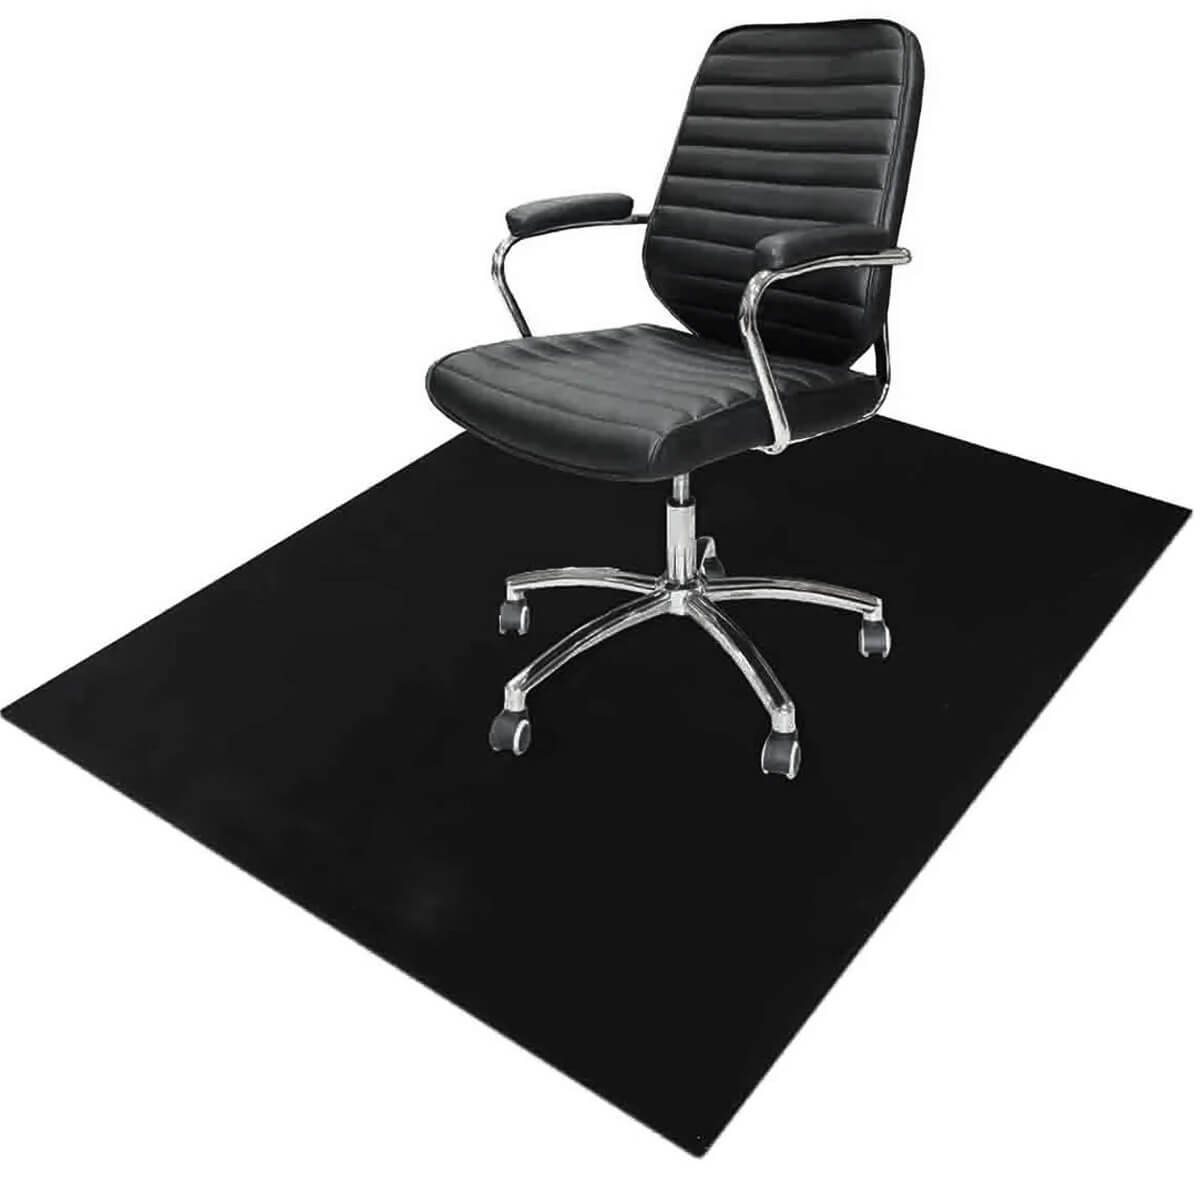 Tapete Protetor de Piso para Cadeira Escritório 100x120cm Preto Protepiso Flexível Dello